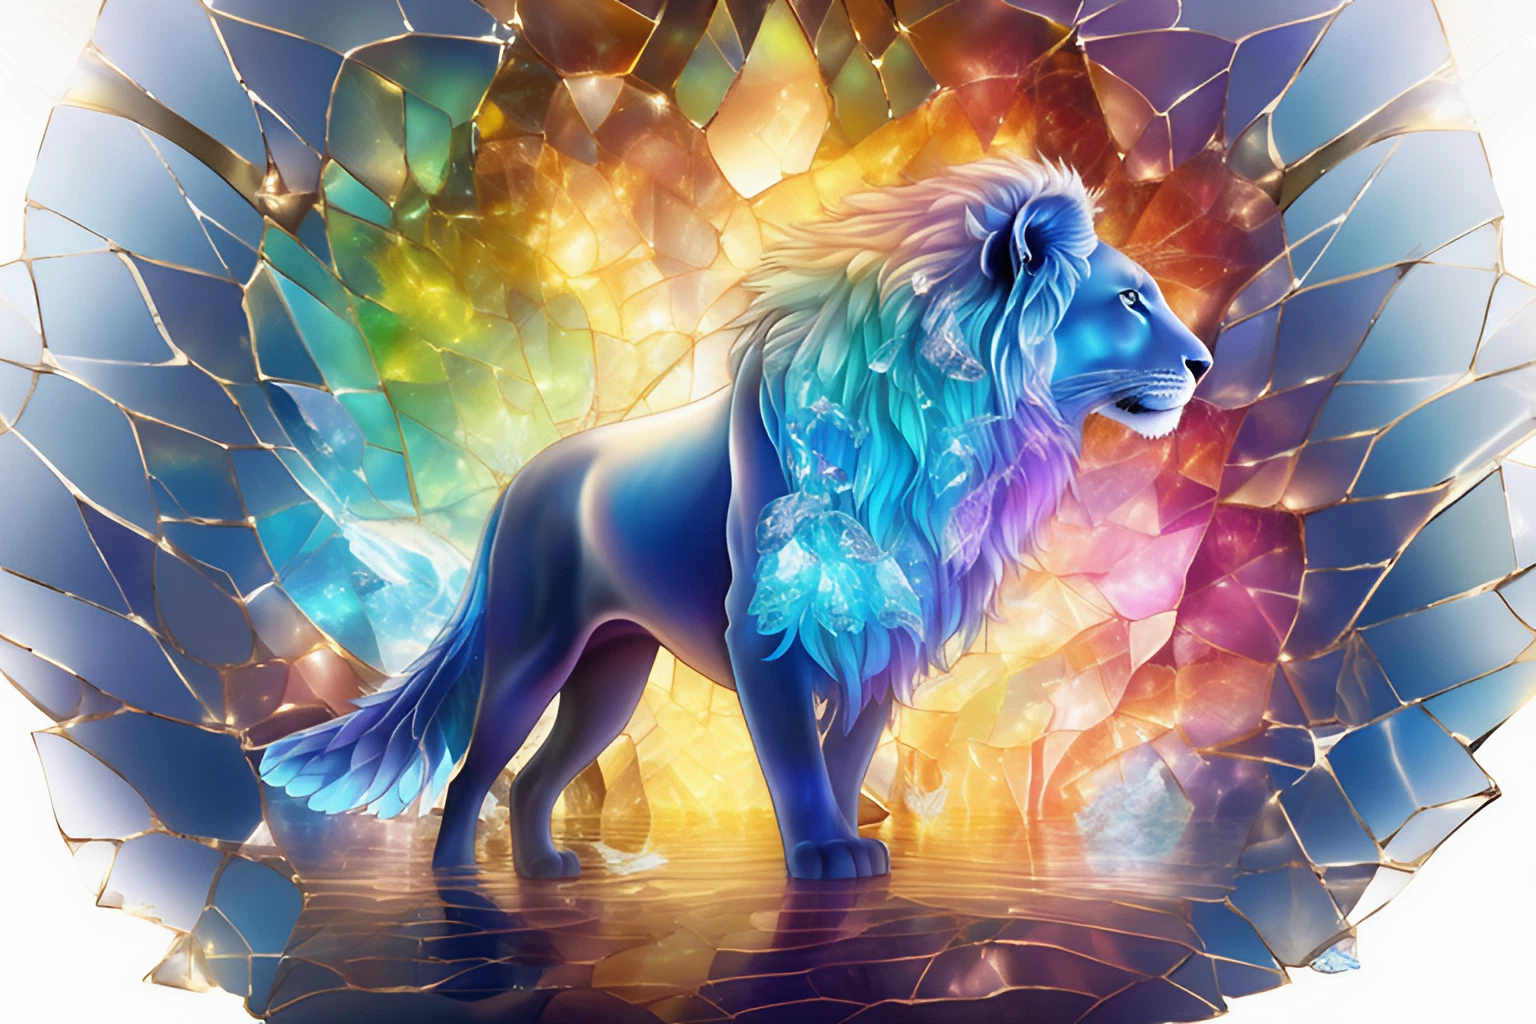 ネオン色に輝くライオン＆美しい神聖な動物のリアルな無料壁紙素材